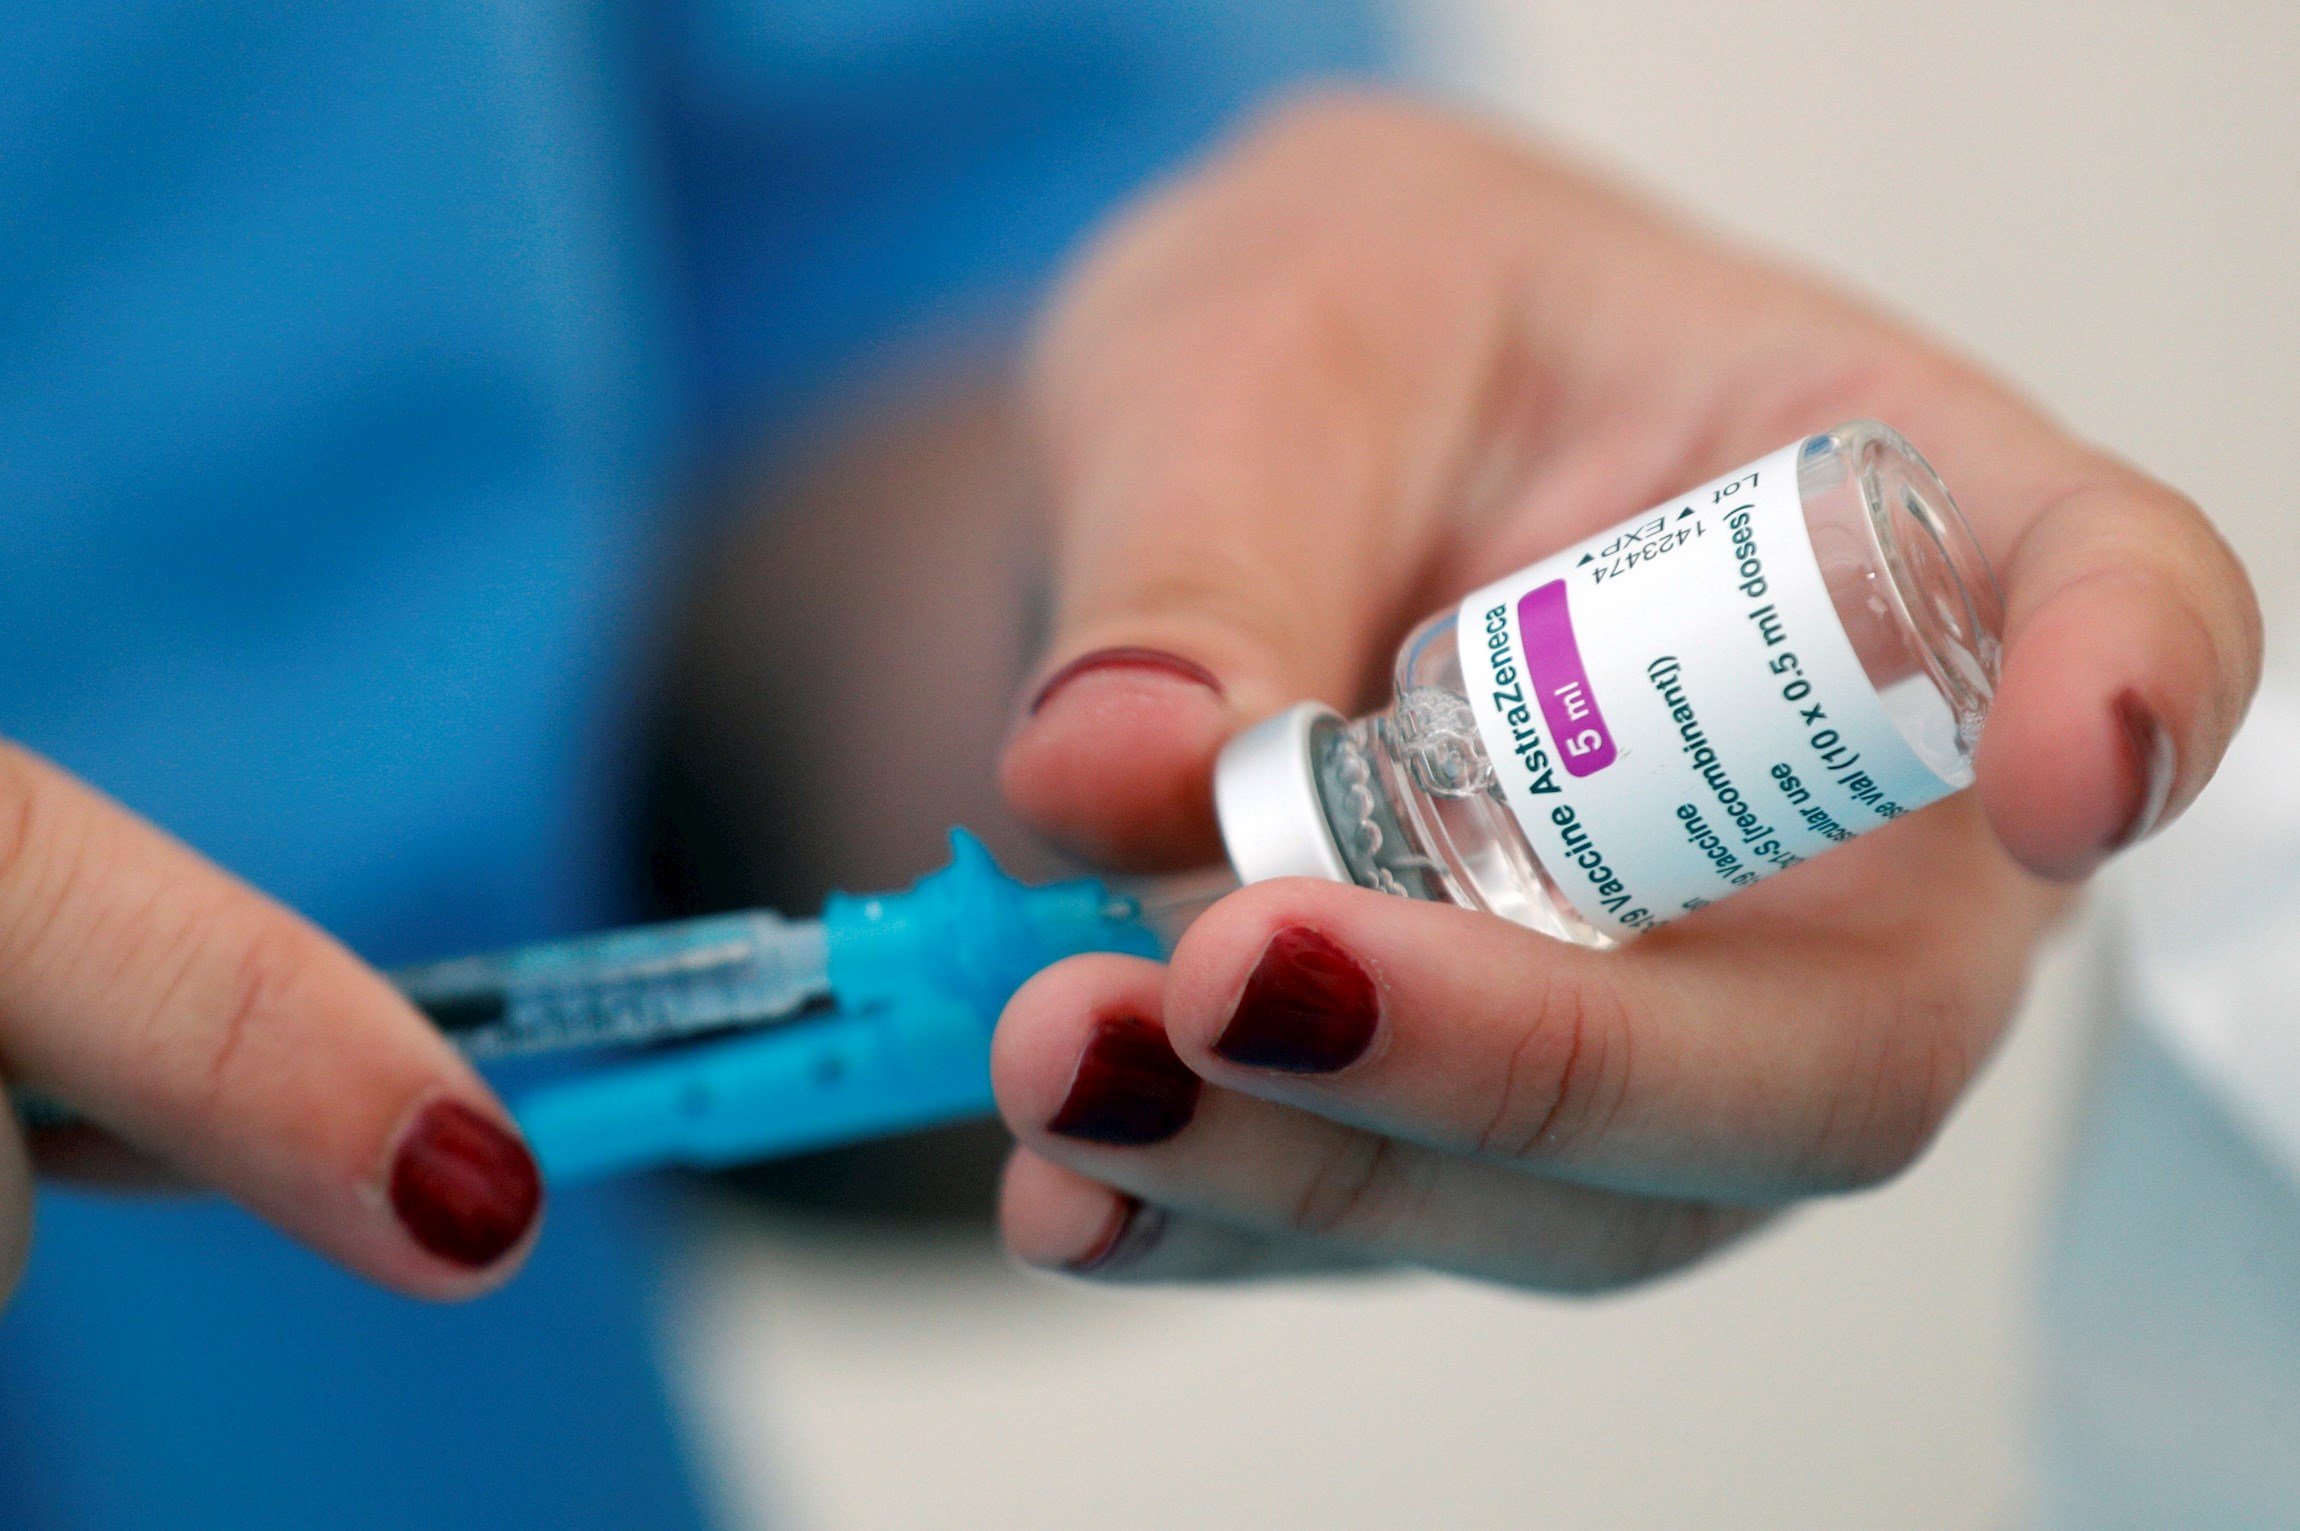 L'EMA emet el veredicte sobre AstraZeneca: "És una vacuna segura i eficaç"